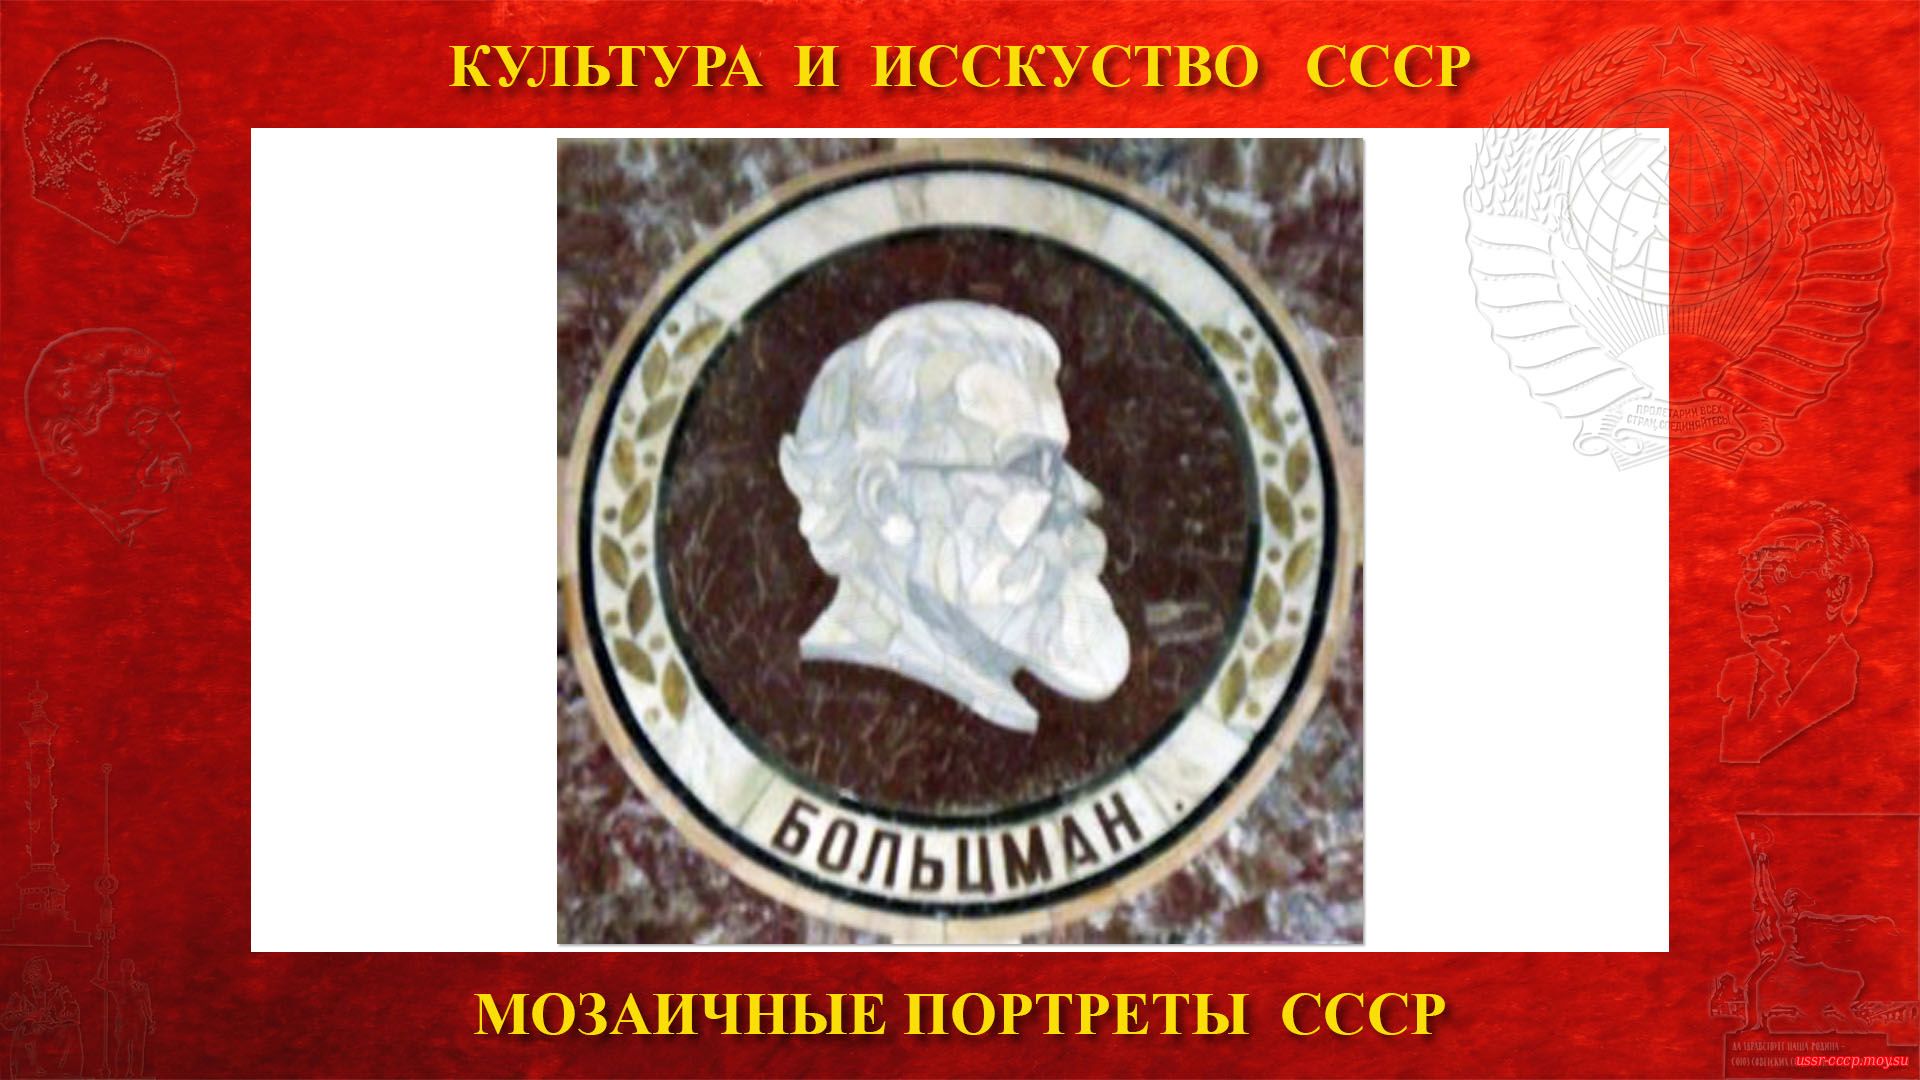 Мозаичный портрет Больцману Л. на Ленинских горах в ГЗ МГУ (Москва 1953) (повествование)